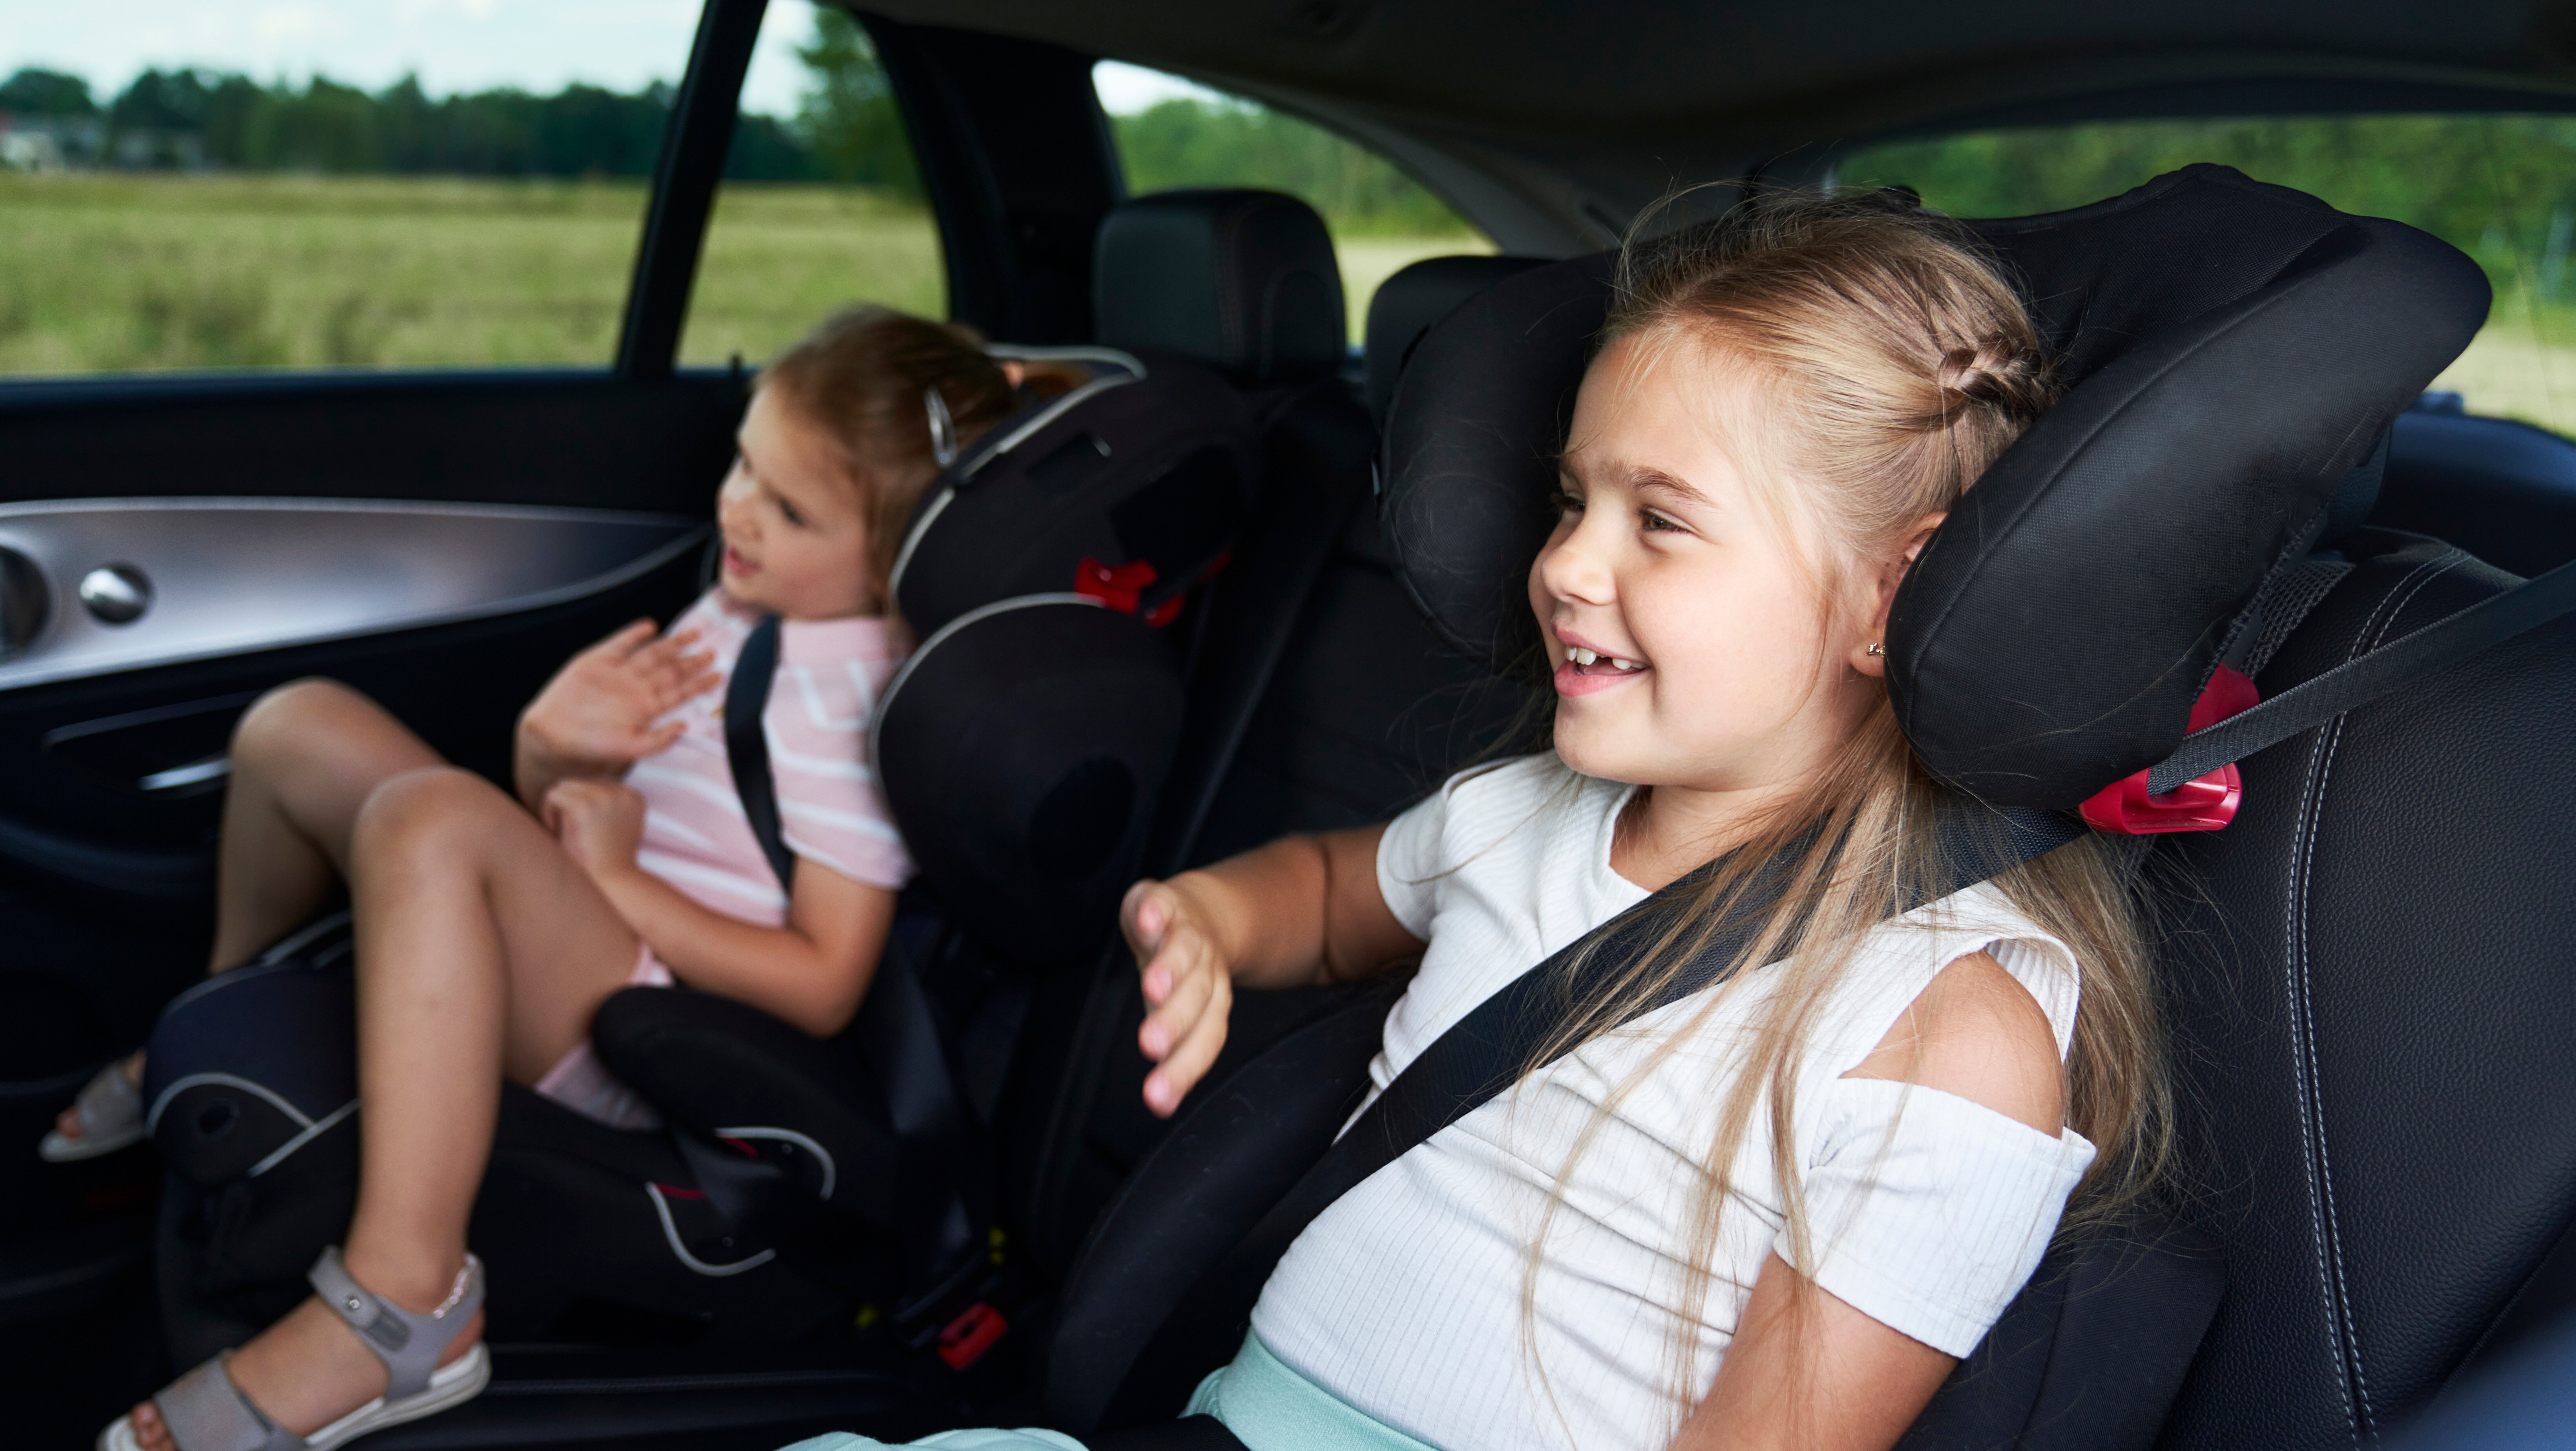 Florida Designates April as Child Car Safety Awareness Month